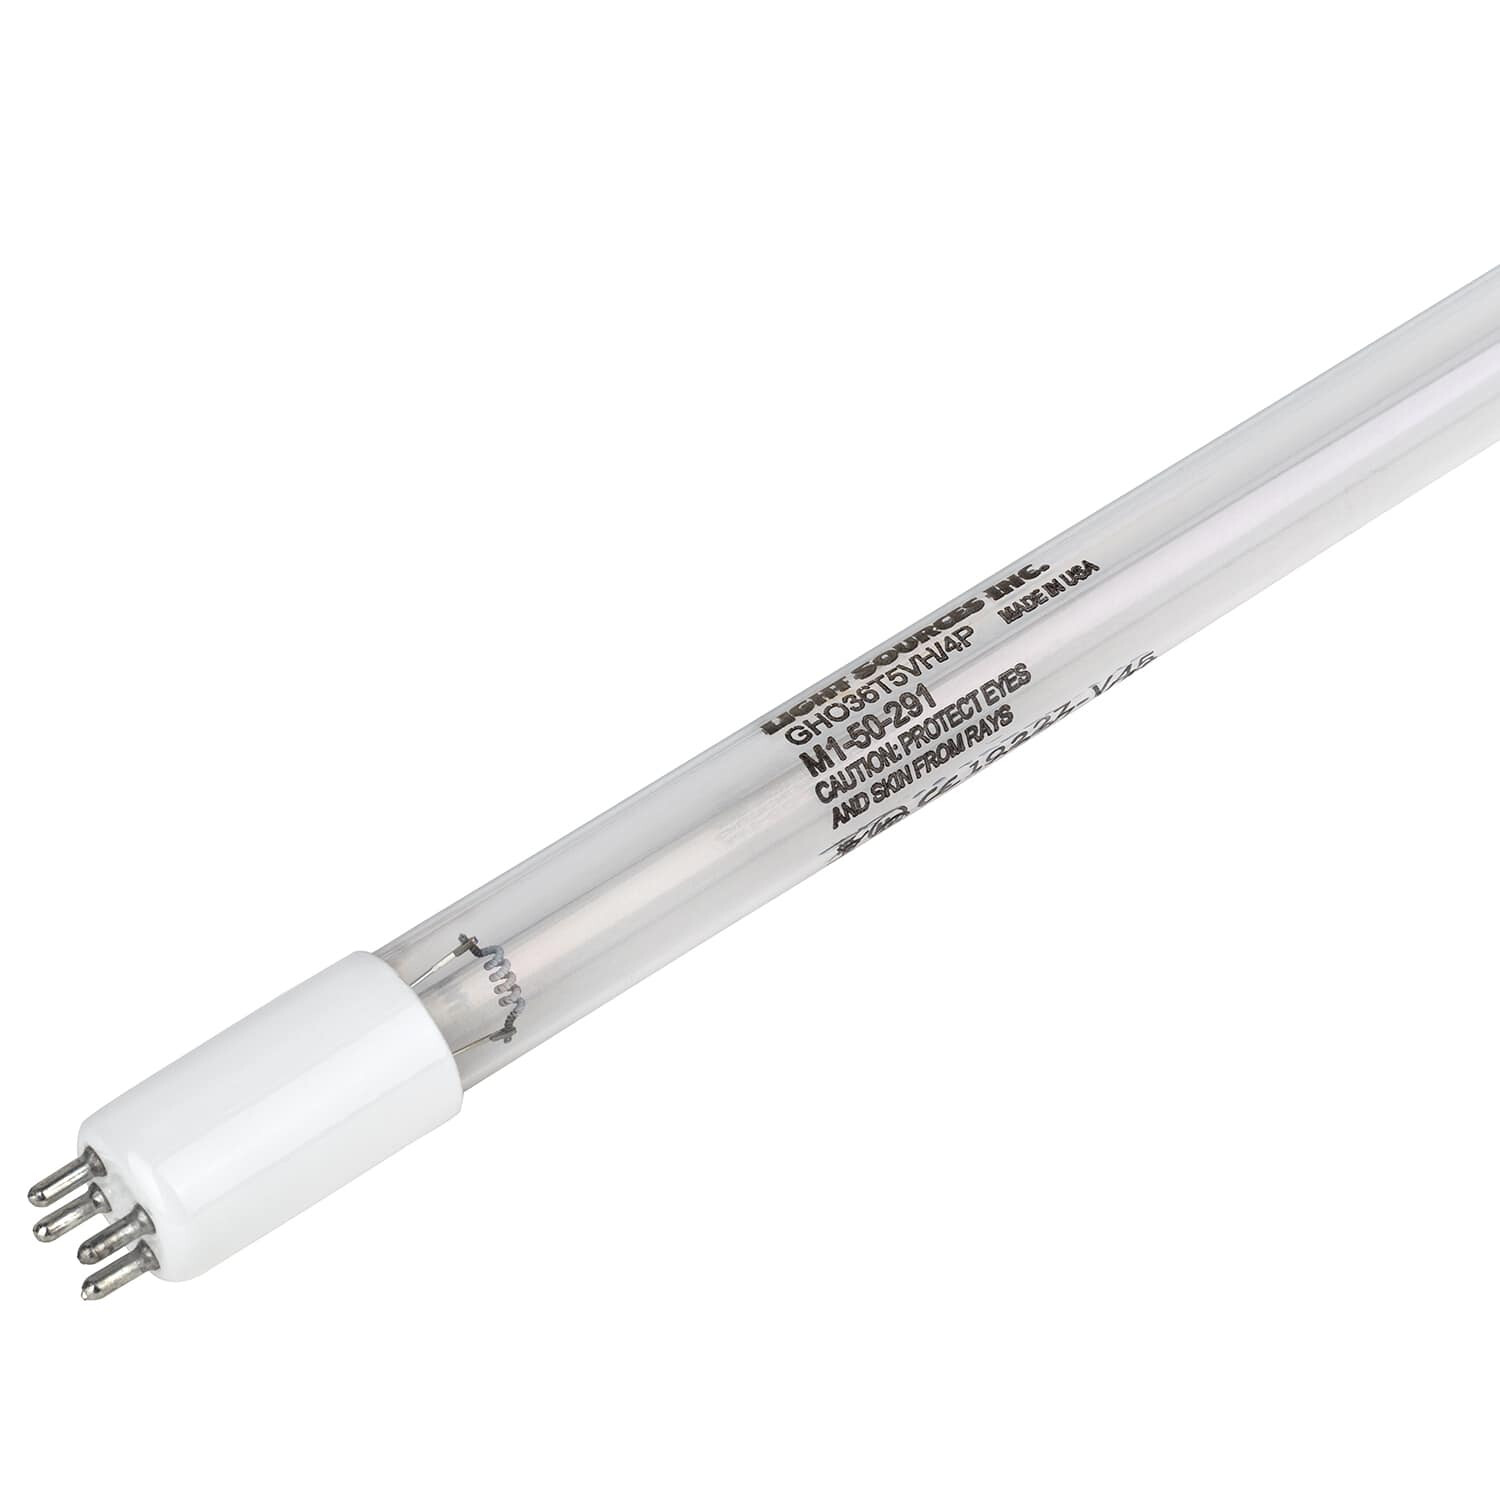 Лампа E130428 для ультрафиолетовой установки Aquaviva NT-UV87 (106775328)